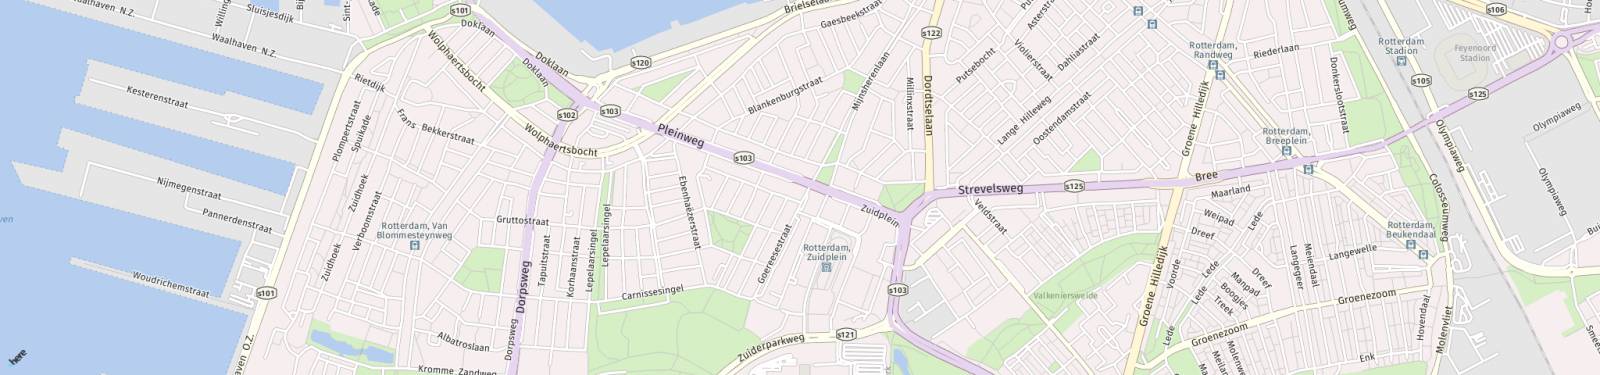 Kaart met locatie Appartement Pleinweg